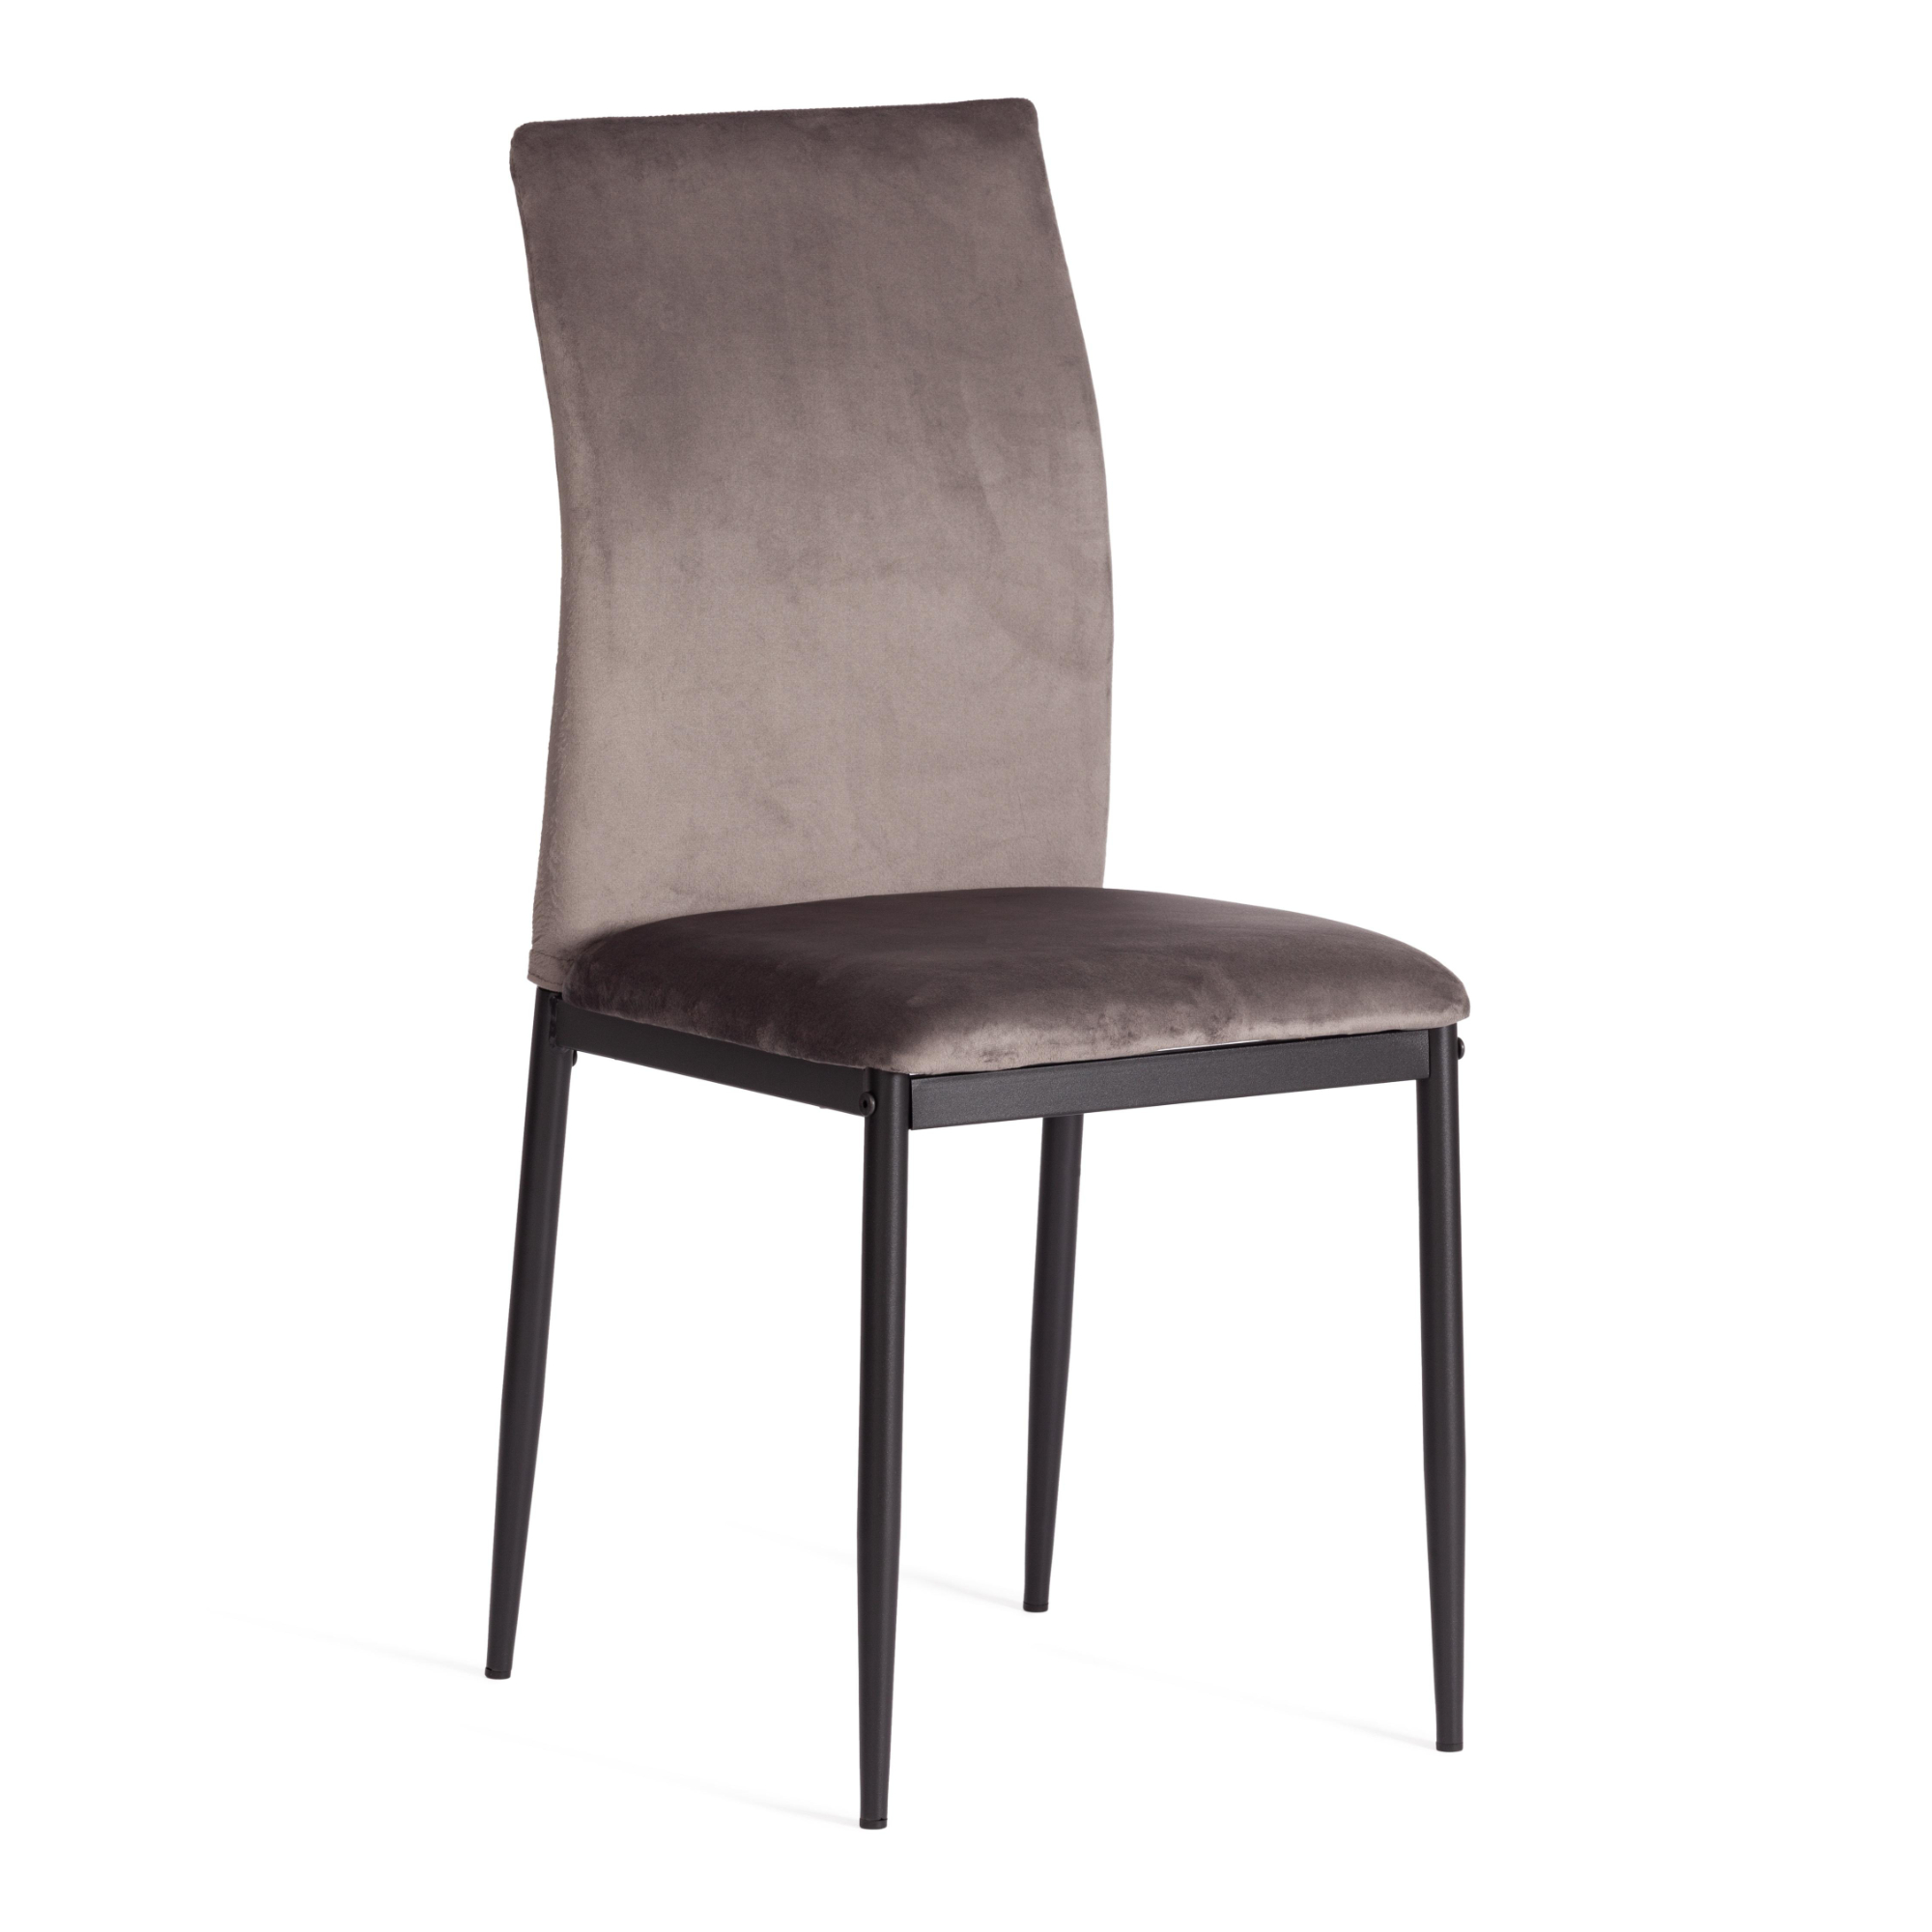 Стул ТС Capri темно-серый вельвет 49,5х41х93,5 см роскошный стул nordic светильник для макияжа домашний круглый стул для спальни туалетный стул сетчатый красный стул для макияжа милый табур